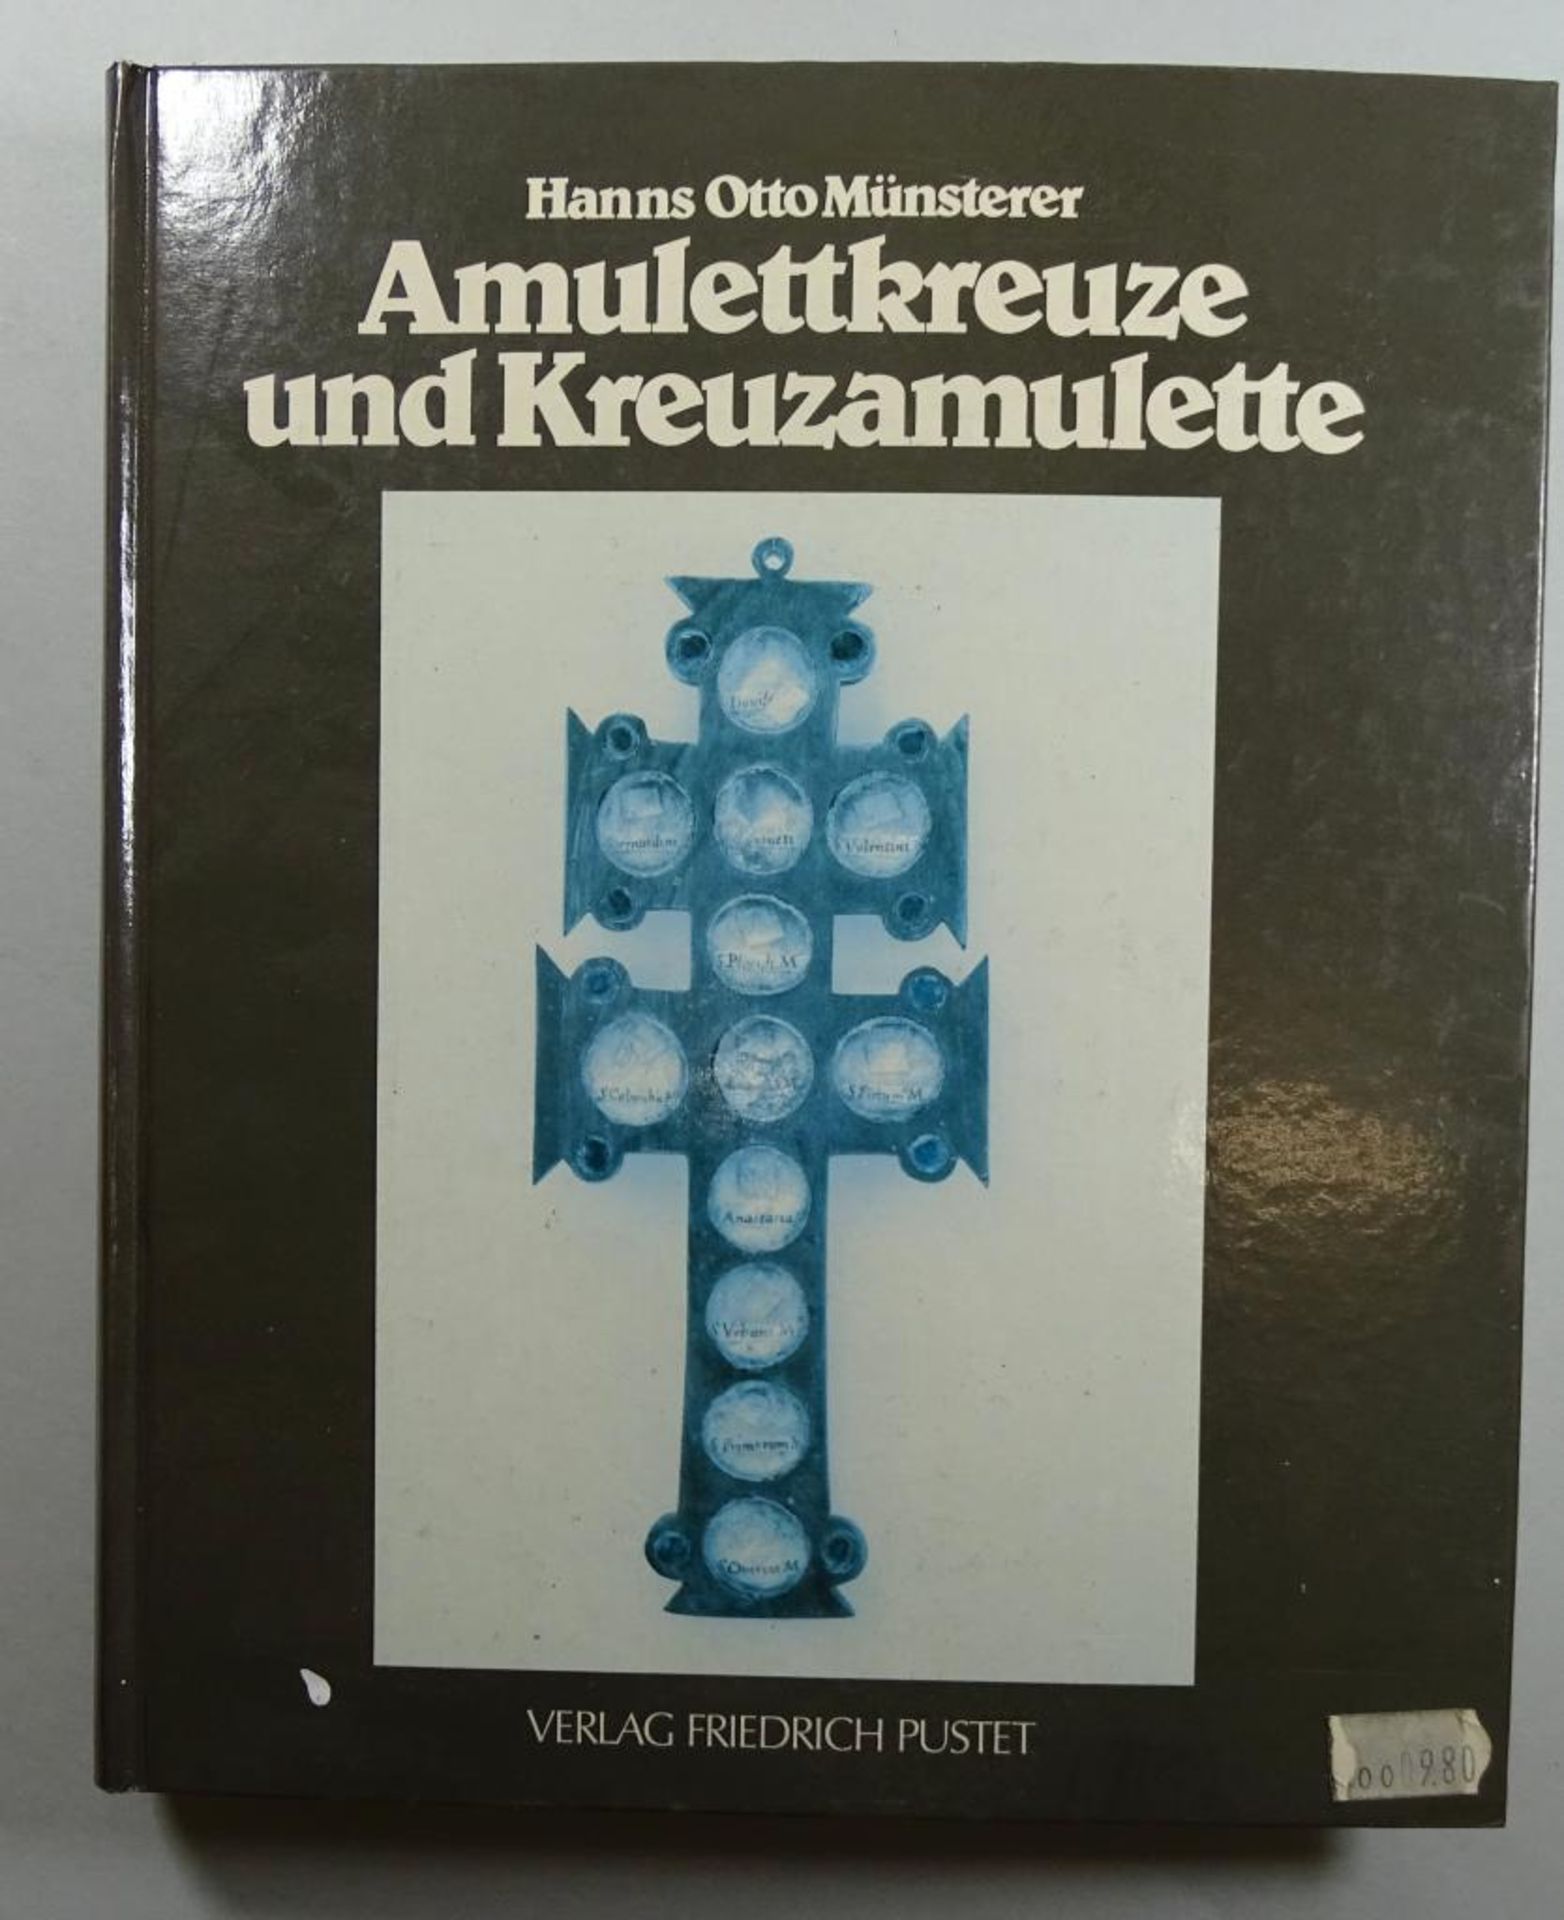 "Amulettkreuze und Kreuzamulette", Verlag Friedrich Pustet, Hanns Otto Münsterer, 198